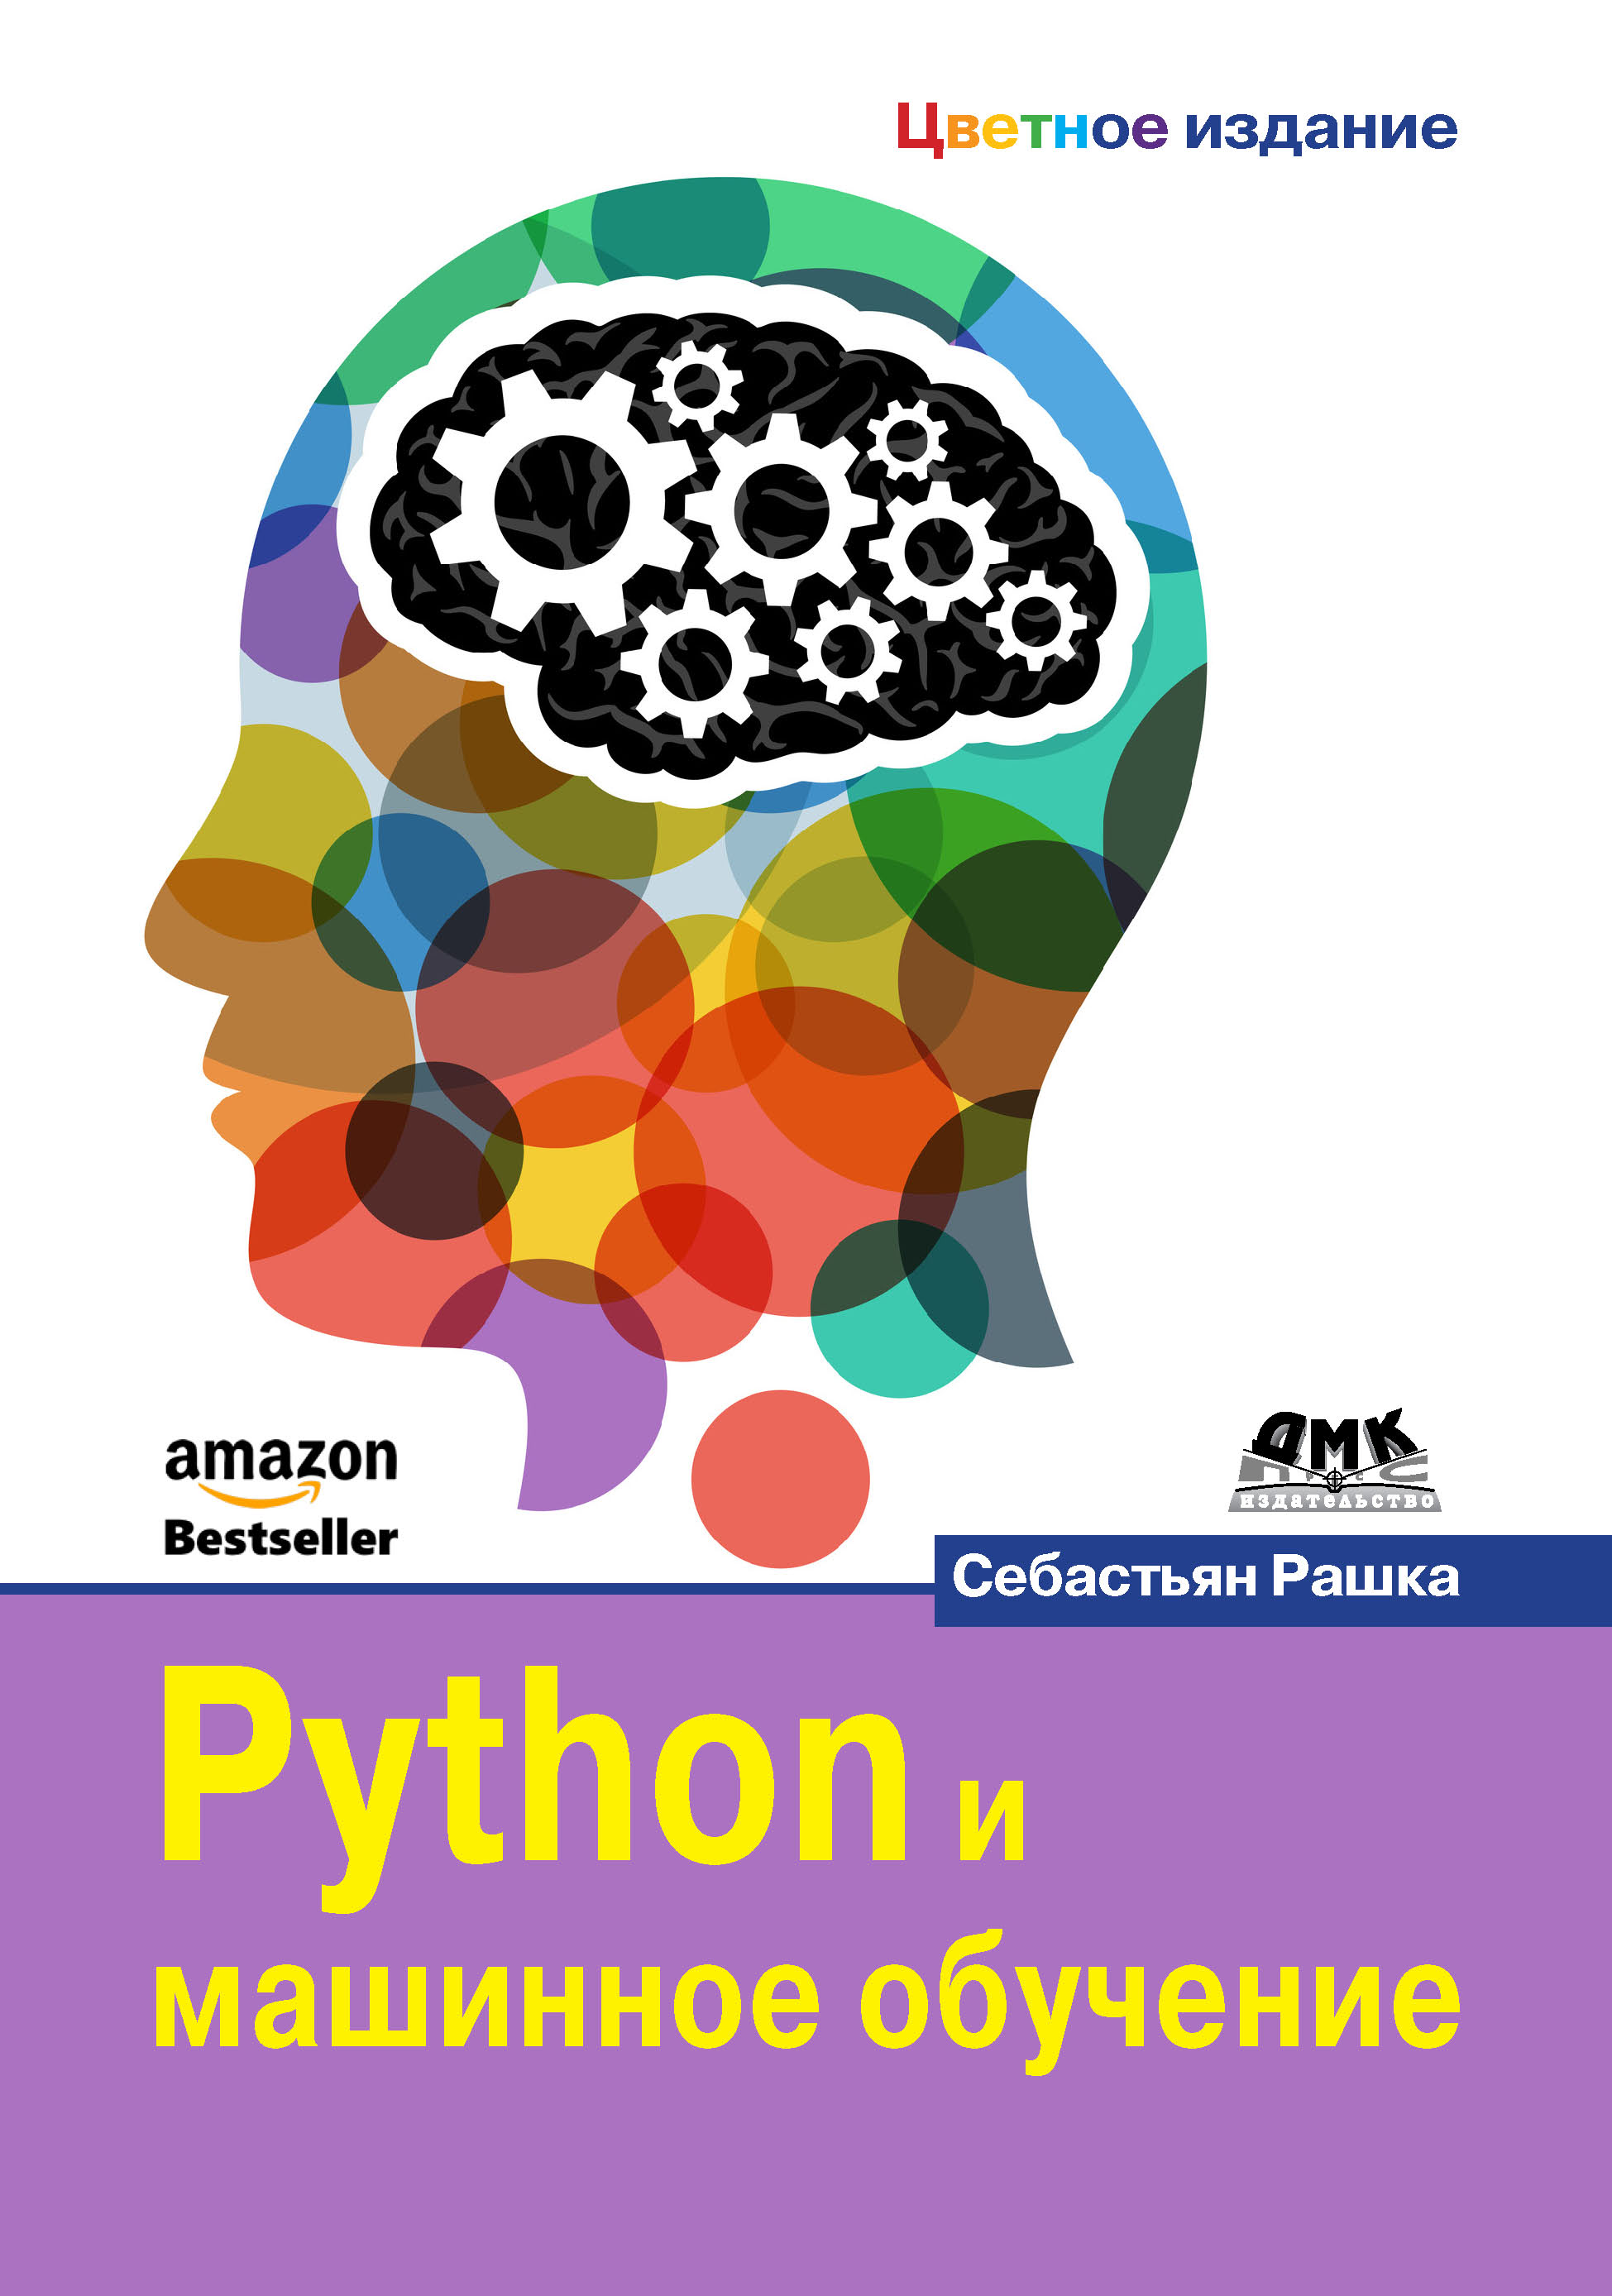 Книга  Python и машинное обучение созданная Себастьян Рашка, Андрей Логунов может относится к жанру зарубежная компьютерная литература, программирование. Стоимость электронной книги Python и машинное обучение с идентификатором 48411231 составляет 990.00 руб.